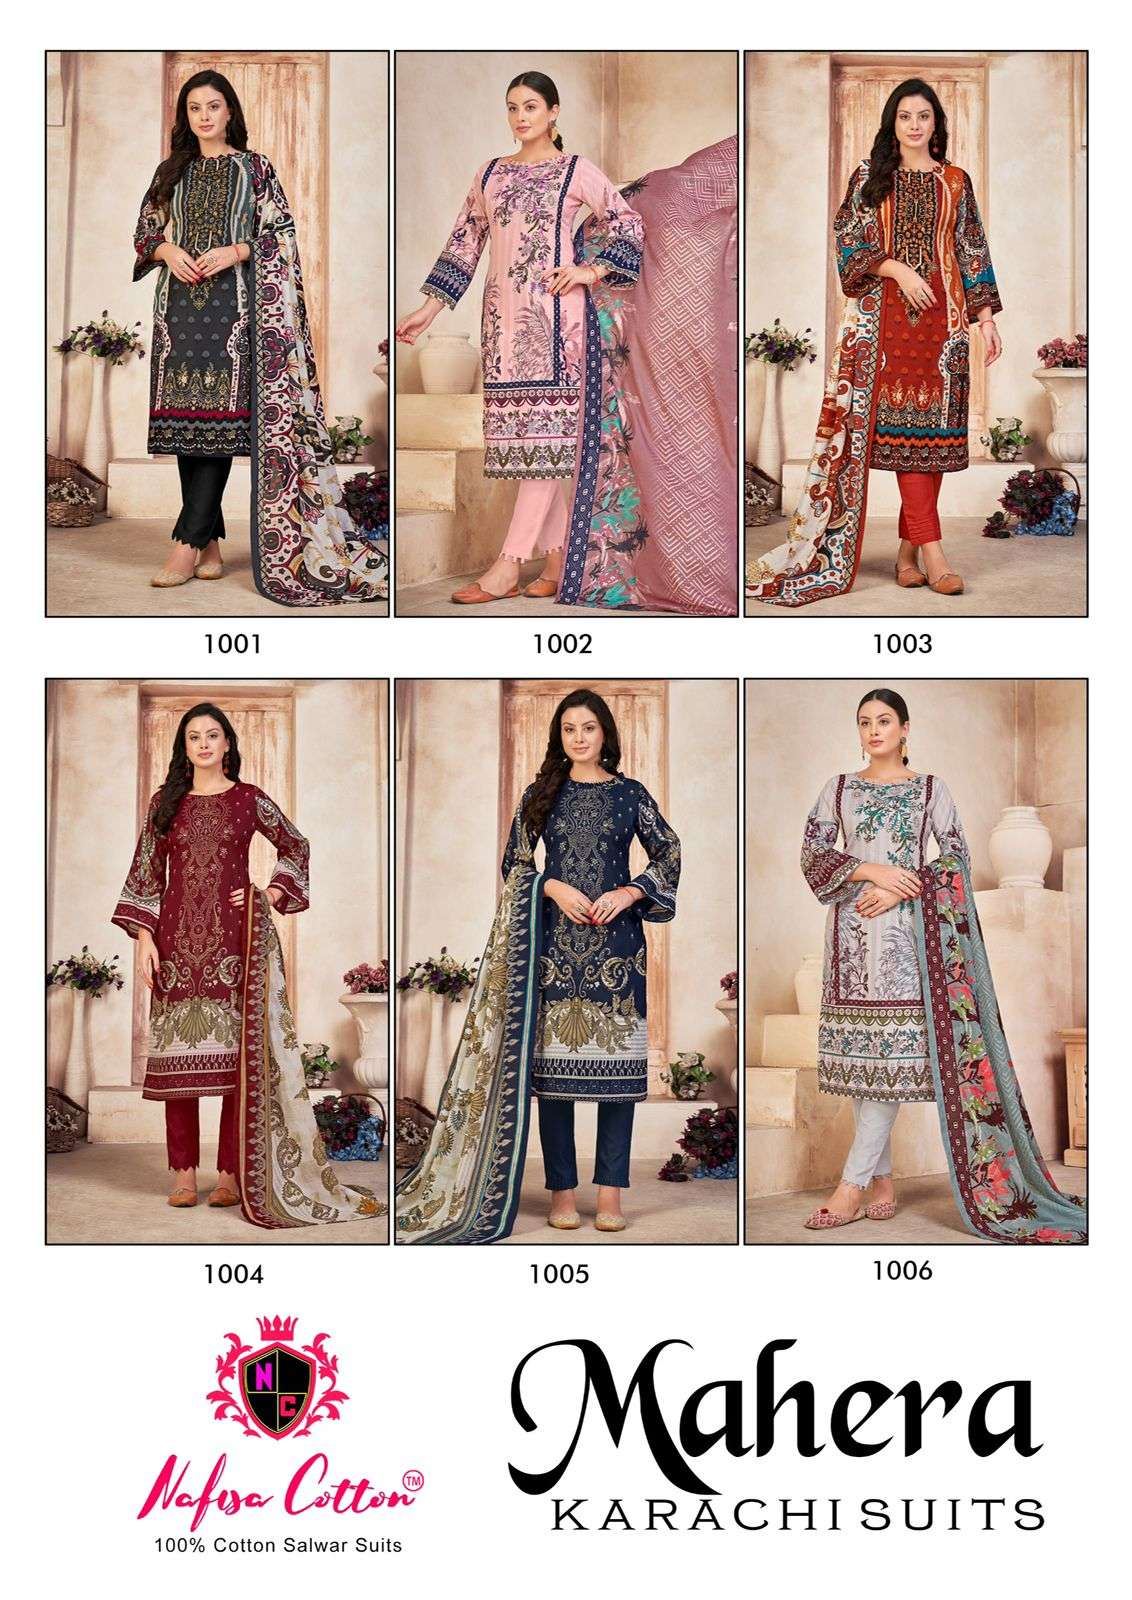 nafisha cotton mahera karachi suits 1001 1006 series latest pakistani salwar kameez wholesaler surat gujarat 0 2023 10 10 22 25 41